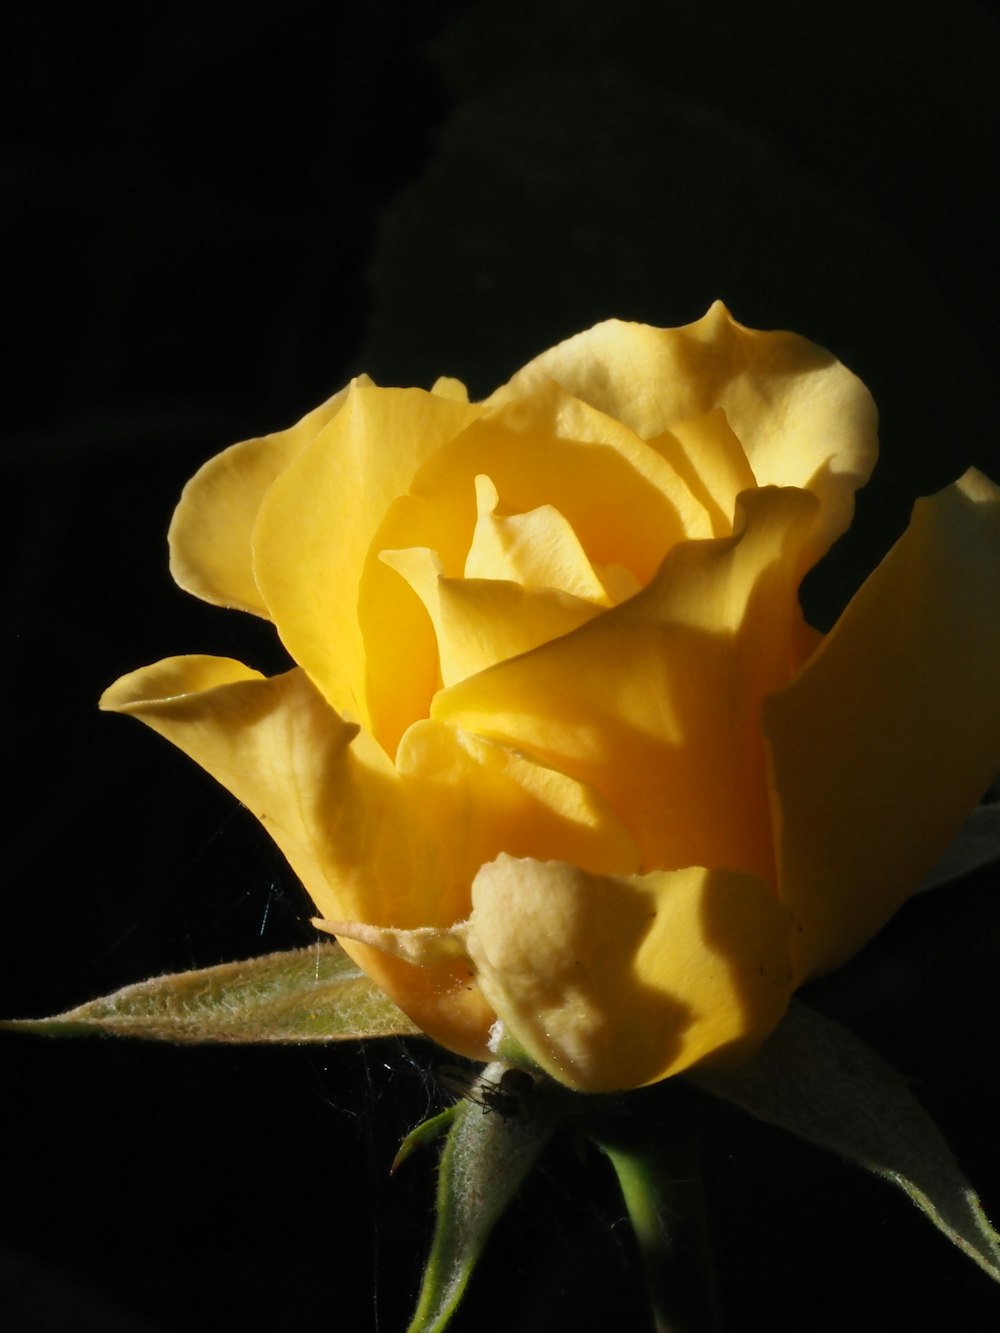 eine gelbe Rose mit dunklem Hintergrund